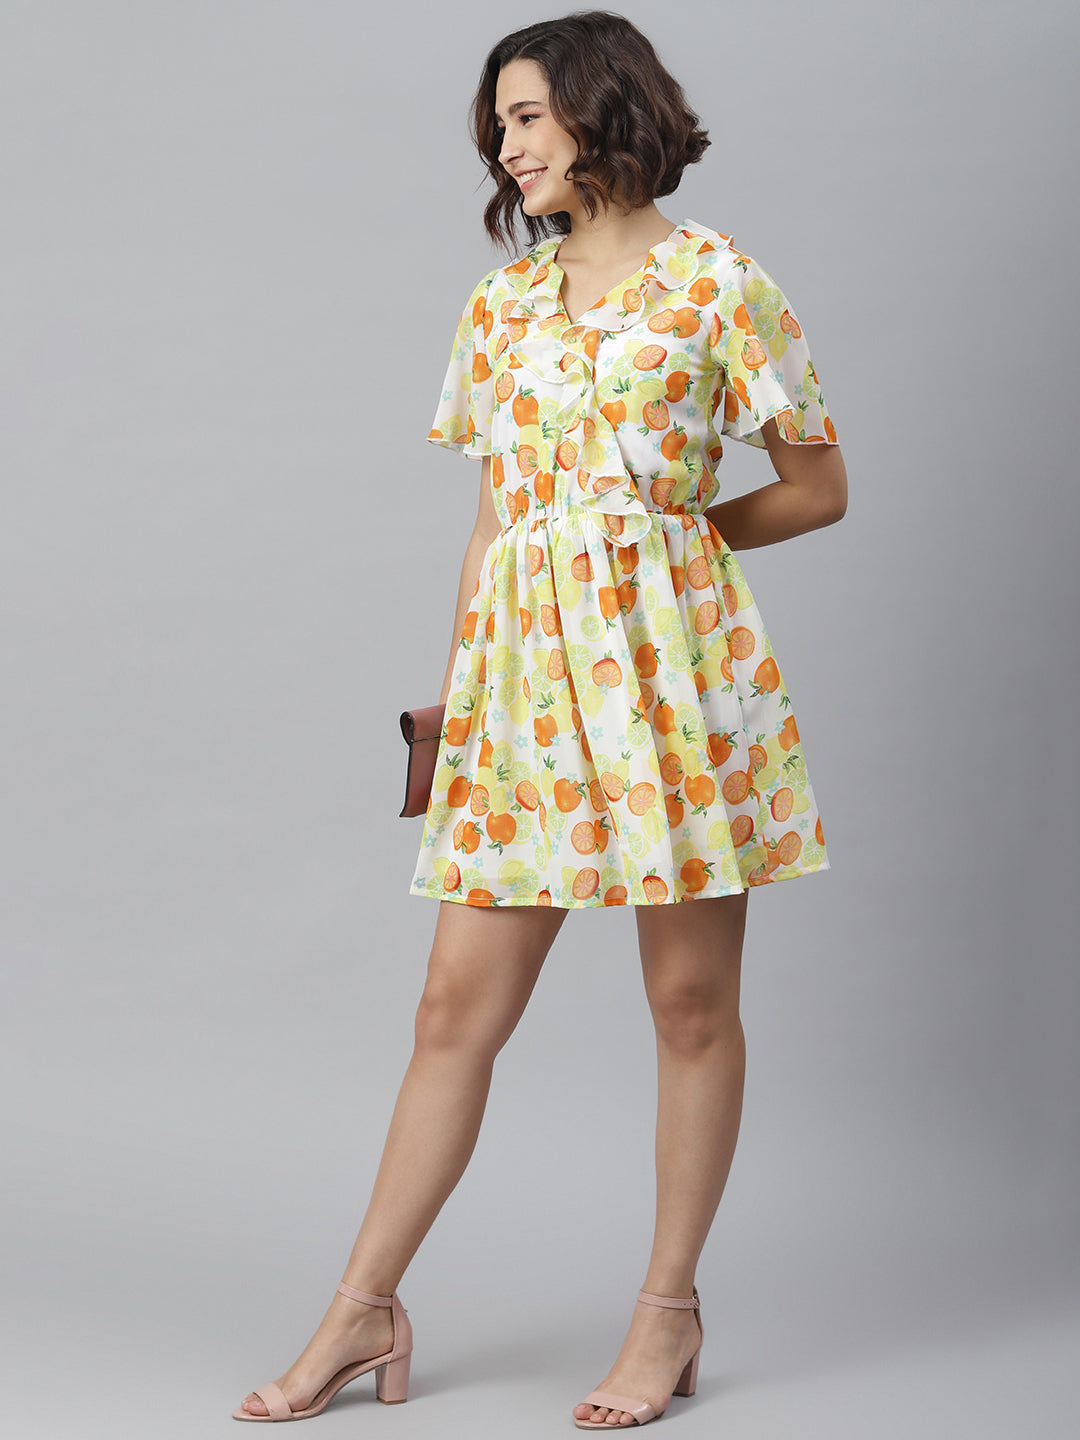 Women's Fruit Print Dress with Ruffle